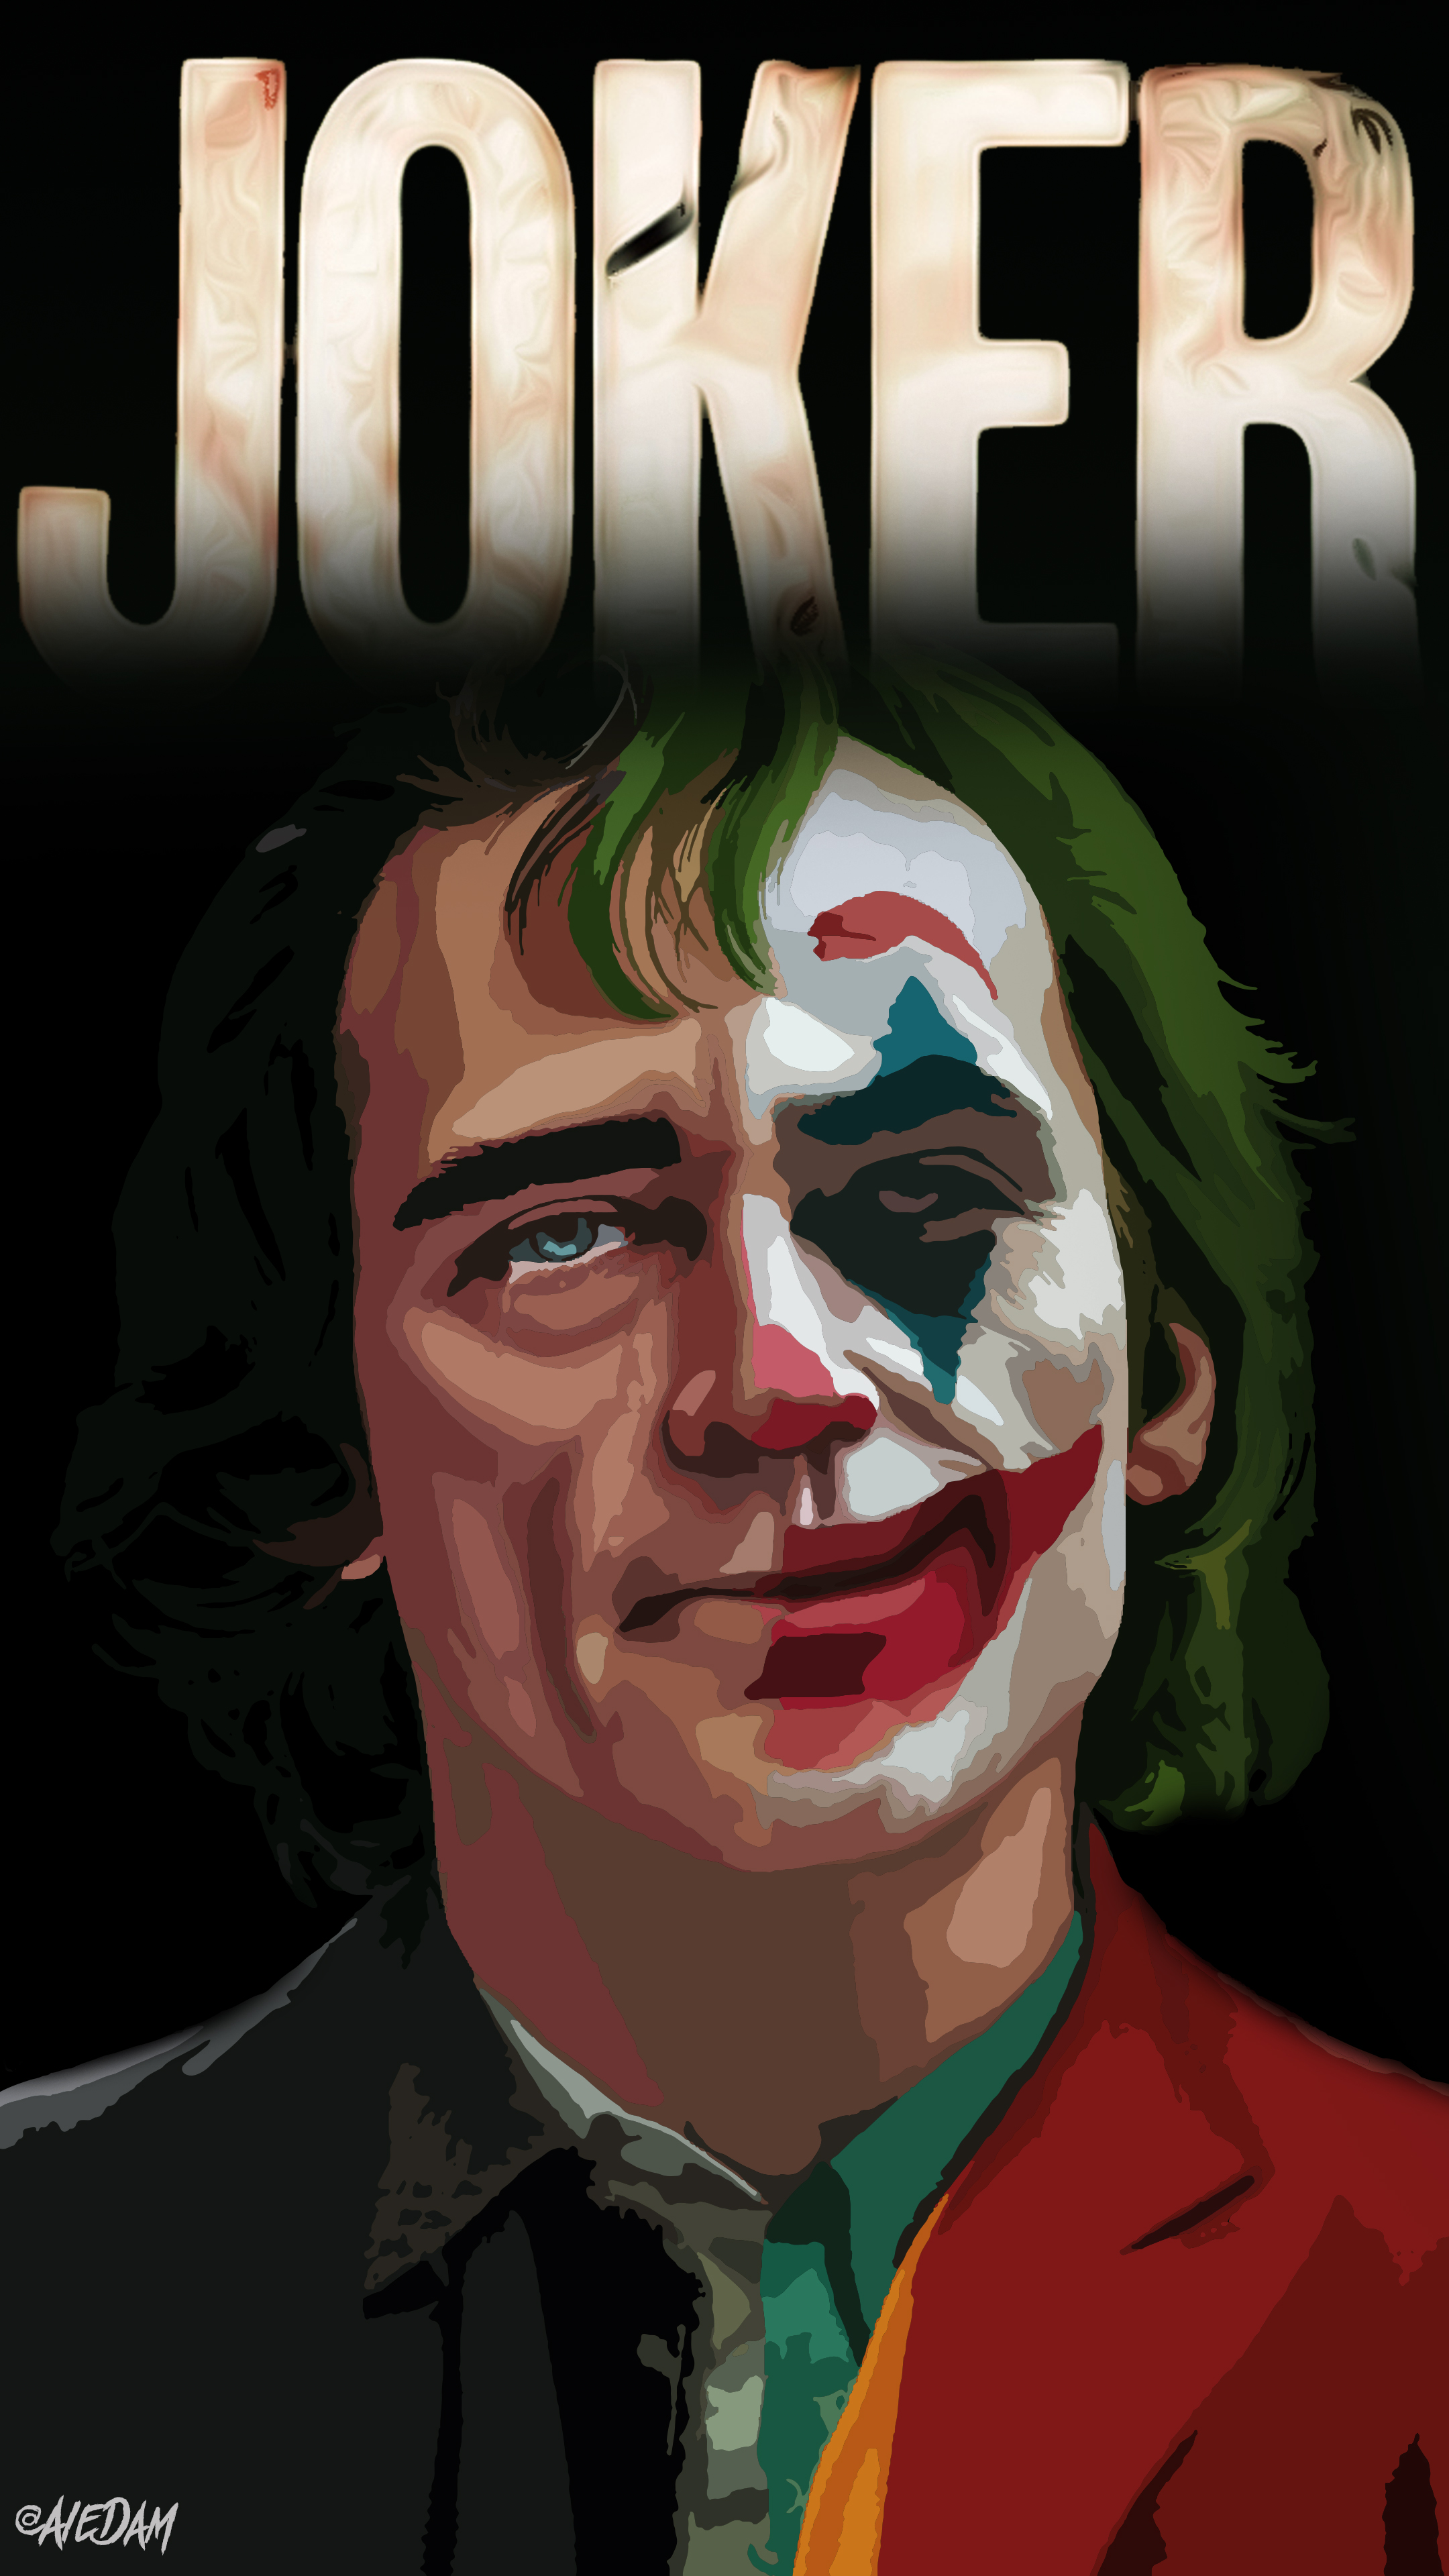 General 2160x3840 Joker (2019 Movie) Joker Joaquin Phoenix DC Universe vector actor movies digital art watermarked text portrait display